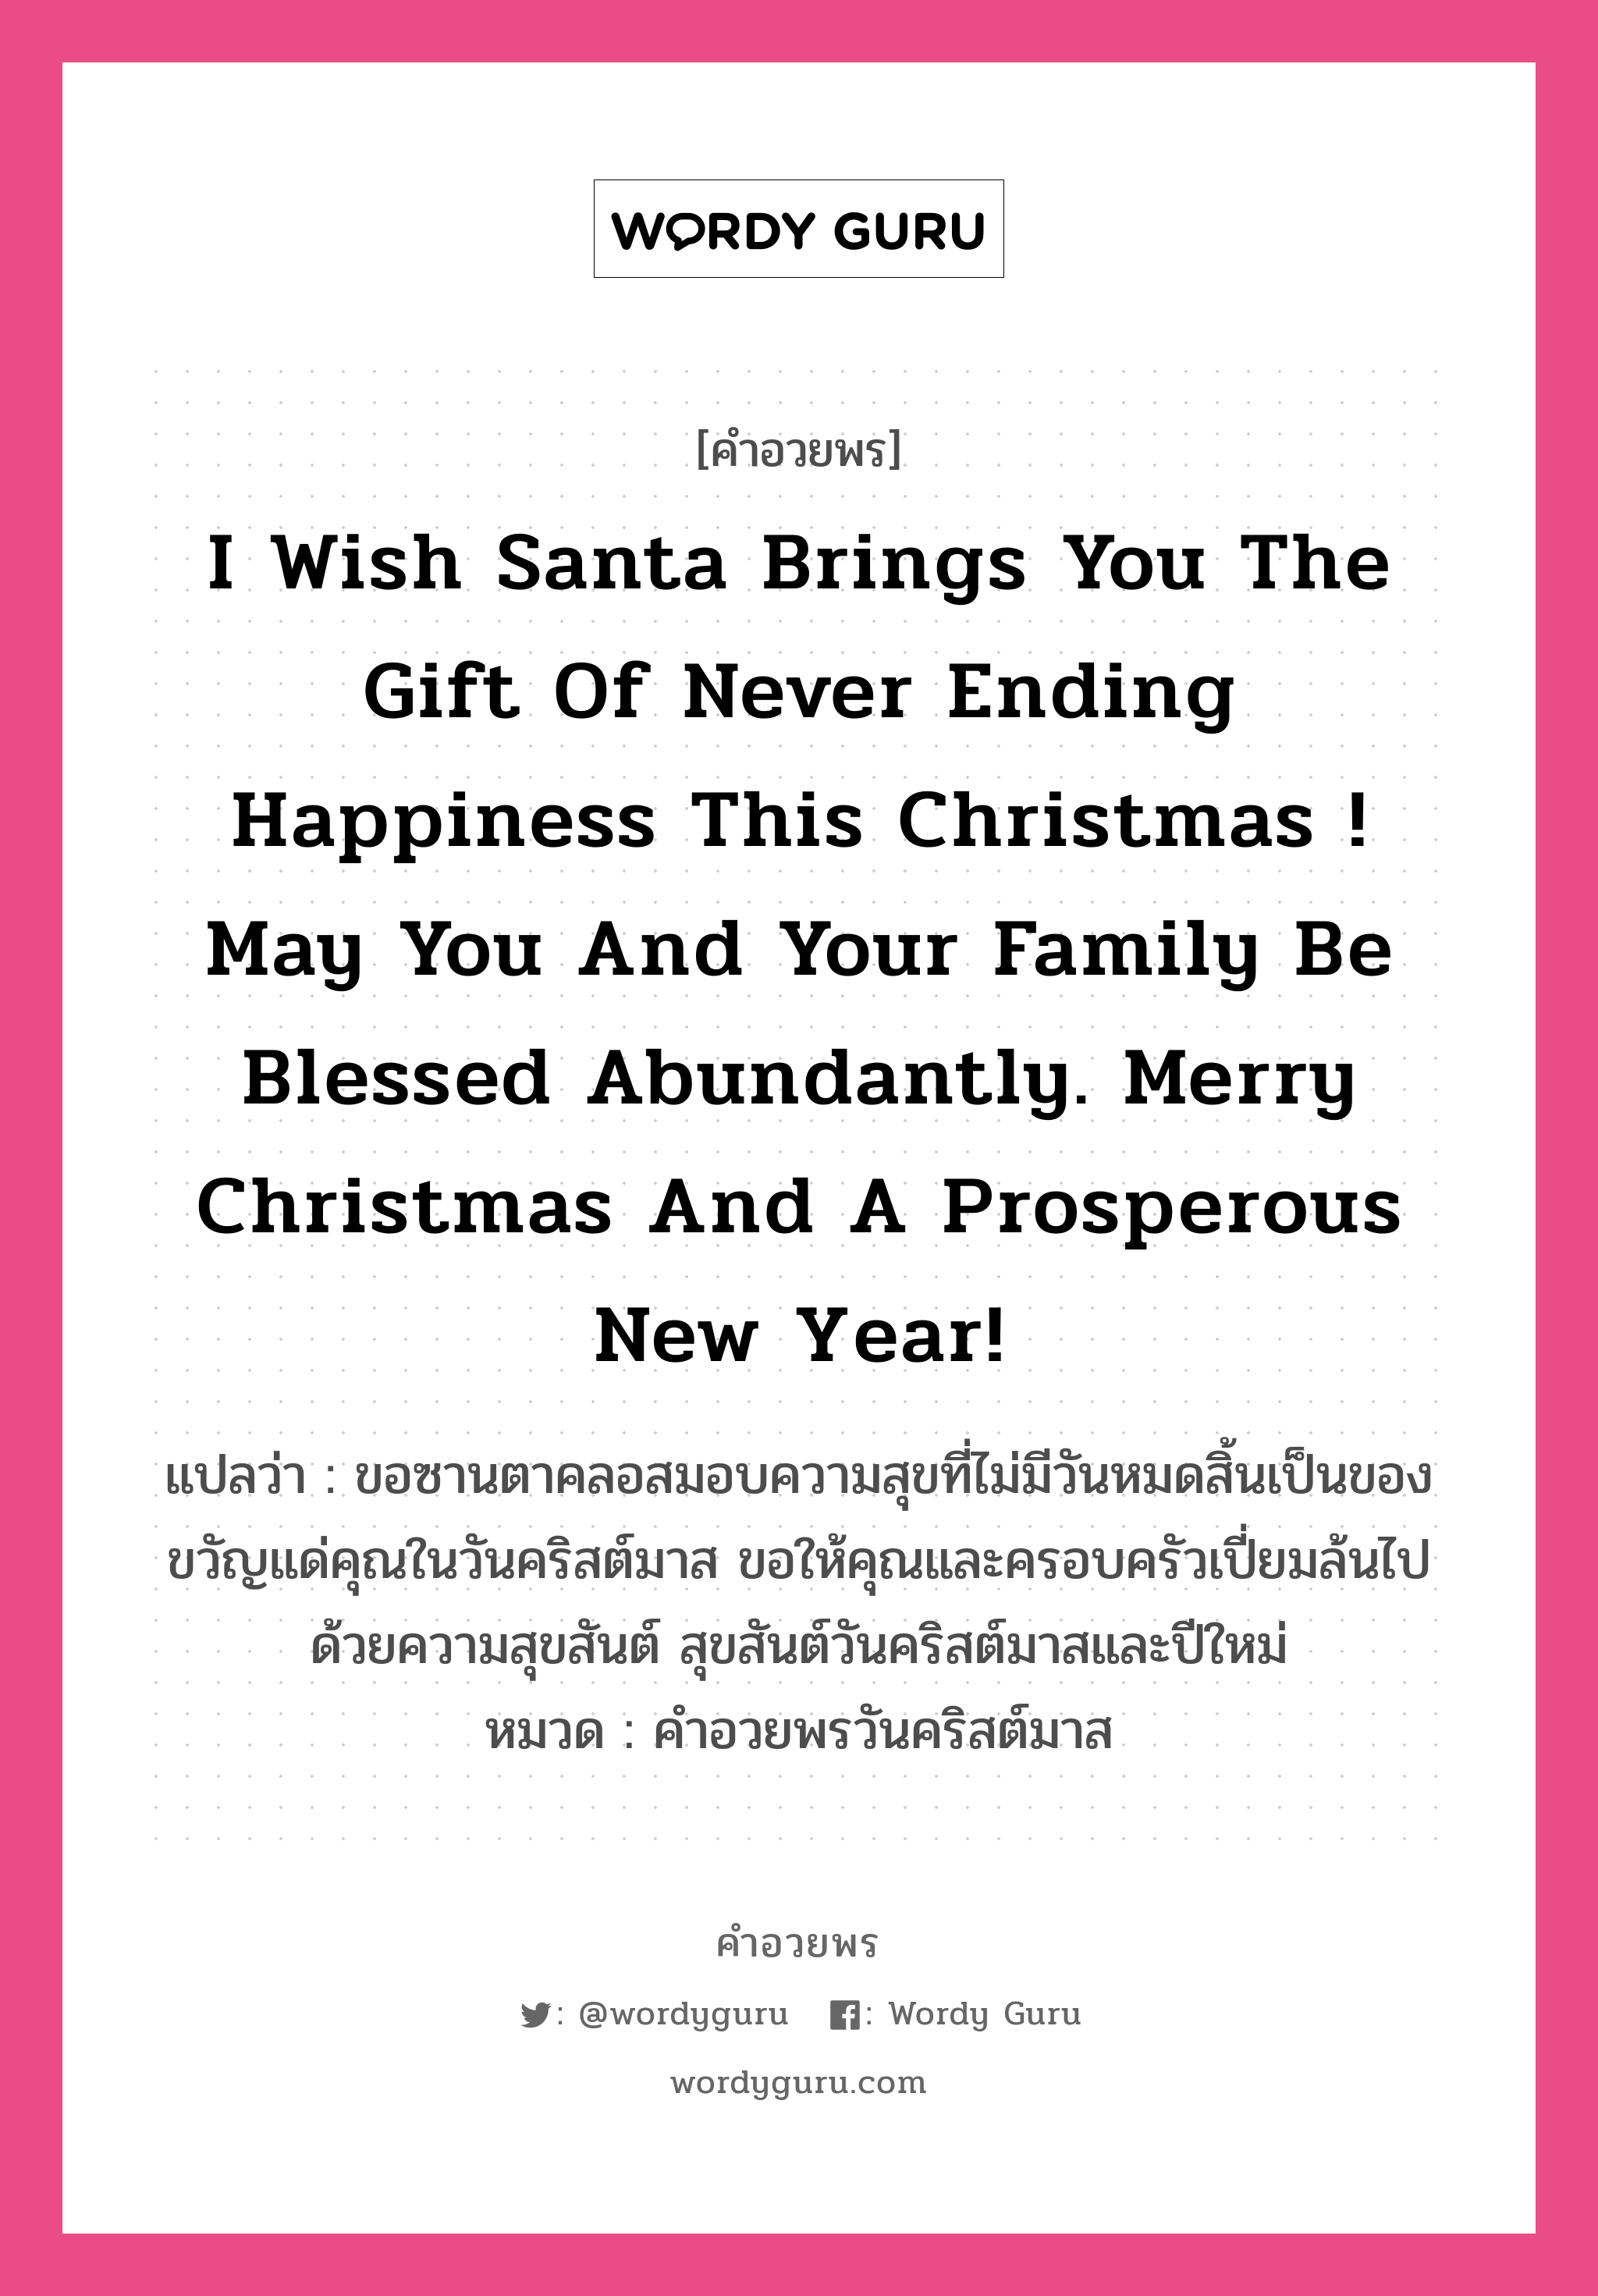 คำอวยพร I wish Santa brings you the gift of never ending happiness this Christmas ! May you and your family be blessed abundantly. Merry Christmas and a Prosperous New Year! คืออะไร?, แปลว่า ขอซานตาคลอสมอบความสุขที่ไม่มีวันหมดสิ้นเป็นของขวัญแด่คุณในวันคริสต์มาส ขอให้คุณและครอบครัวเปี่ยมล้นไปด้วยความสุขสันต์ สุขสันต์วันคริสต์มาสและปีใหม่ หมวด คำอวยพรวันคริสต์มาส หมวด คำอวยพรวันคริสต์มาส